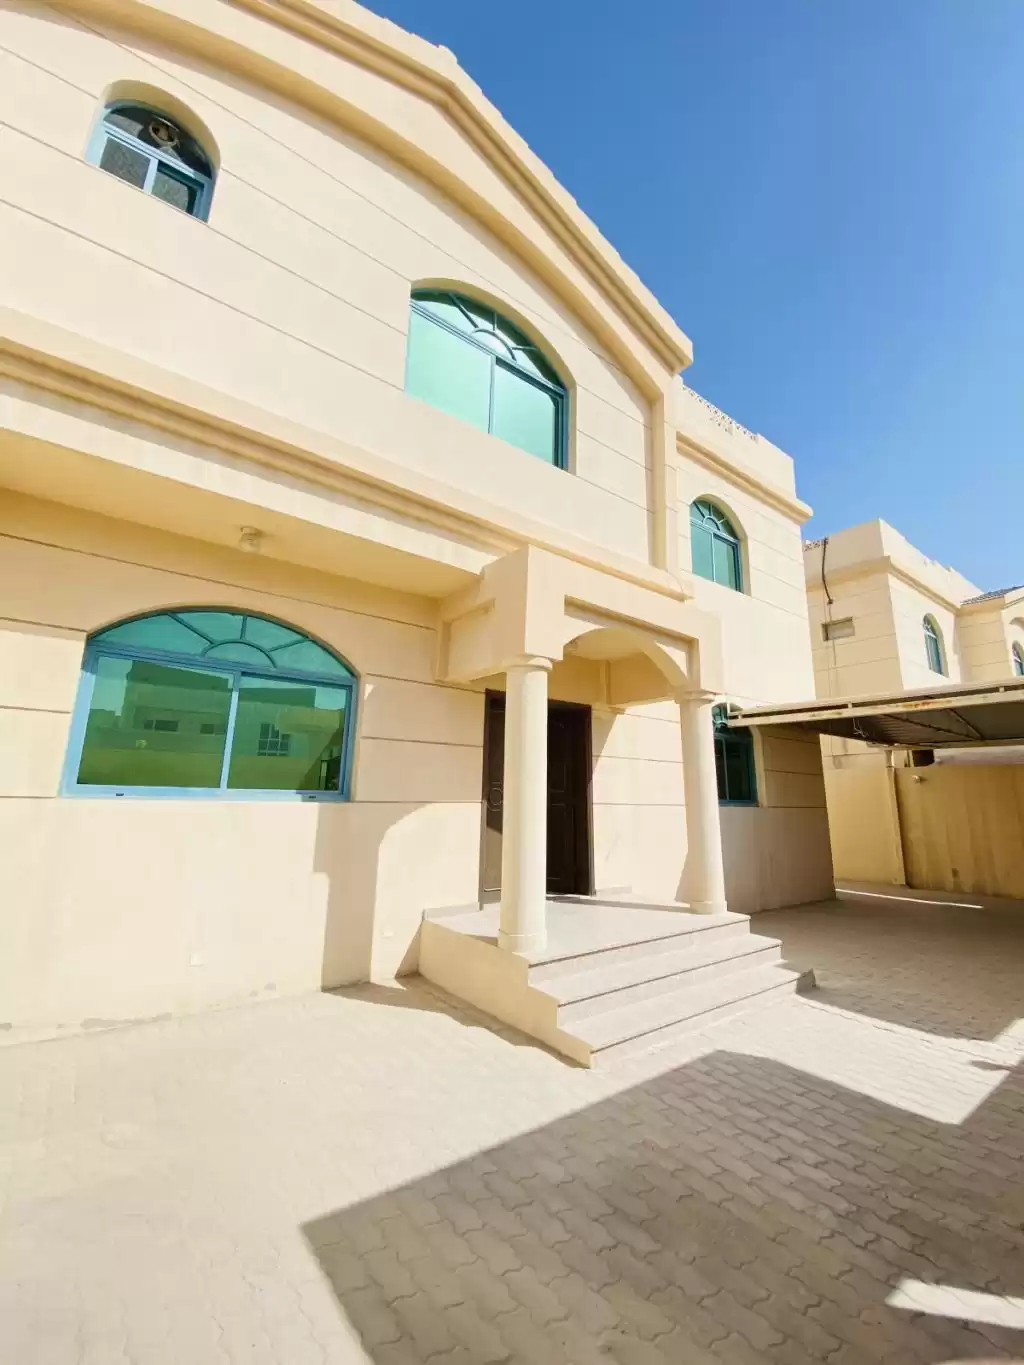 Résidentiel Propriété prête 5 chambres U / f Villa autonome  a louer au Al-Sadd , Doha #10016 - 1  image 